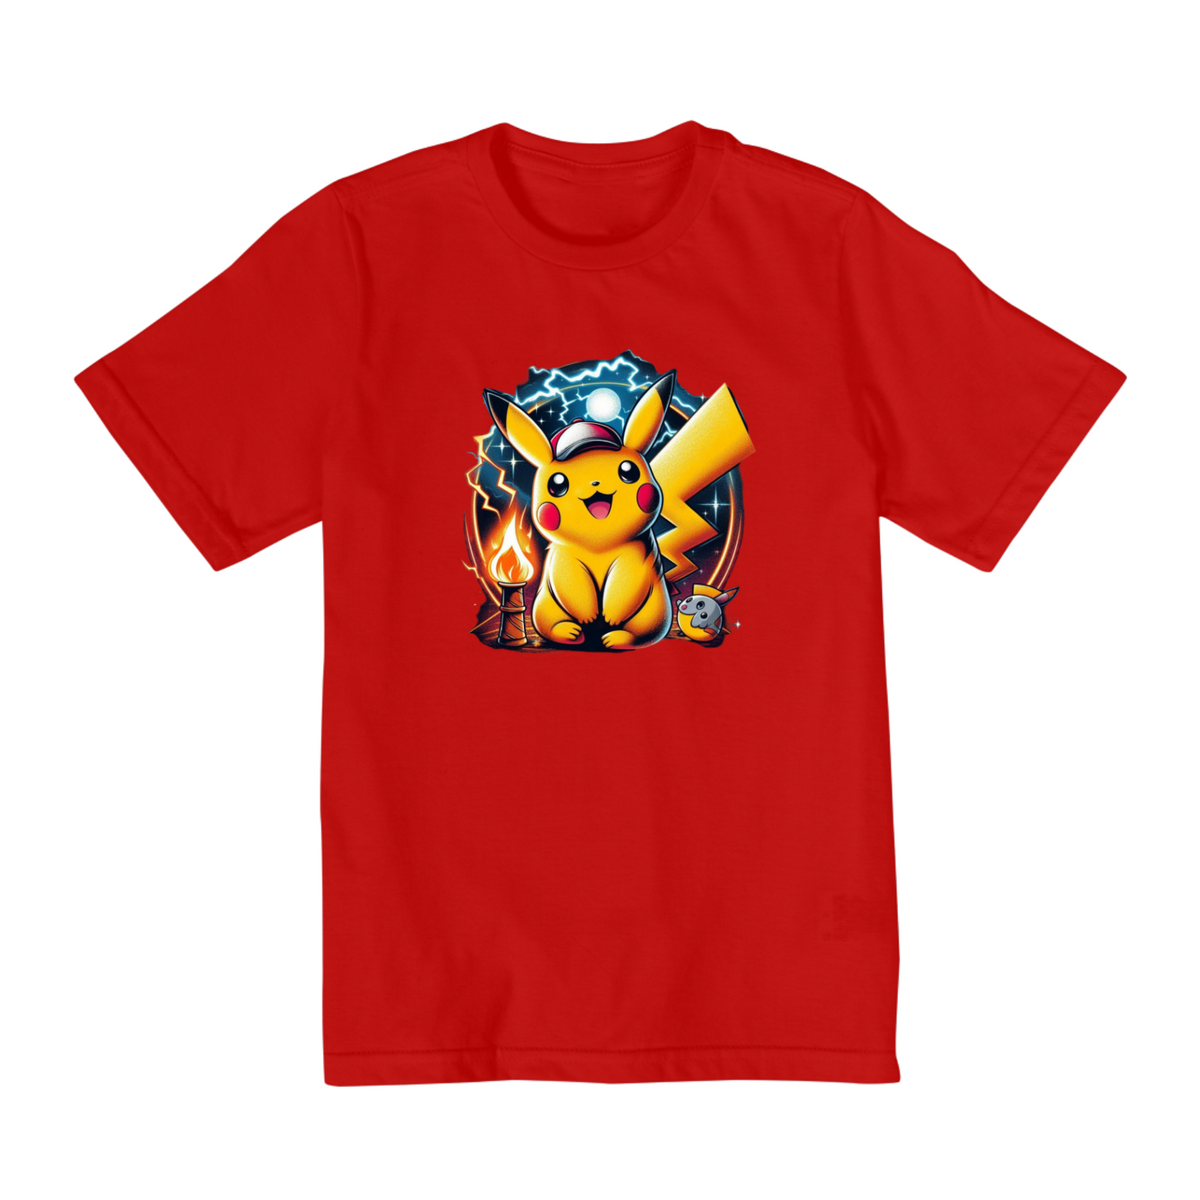 Nome do produto: Pikachu: O Pokémon lendário!